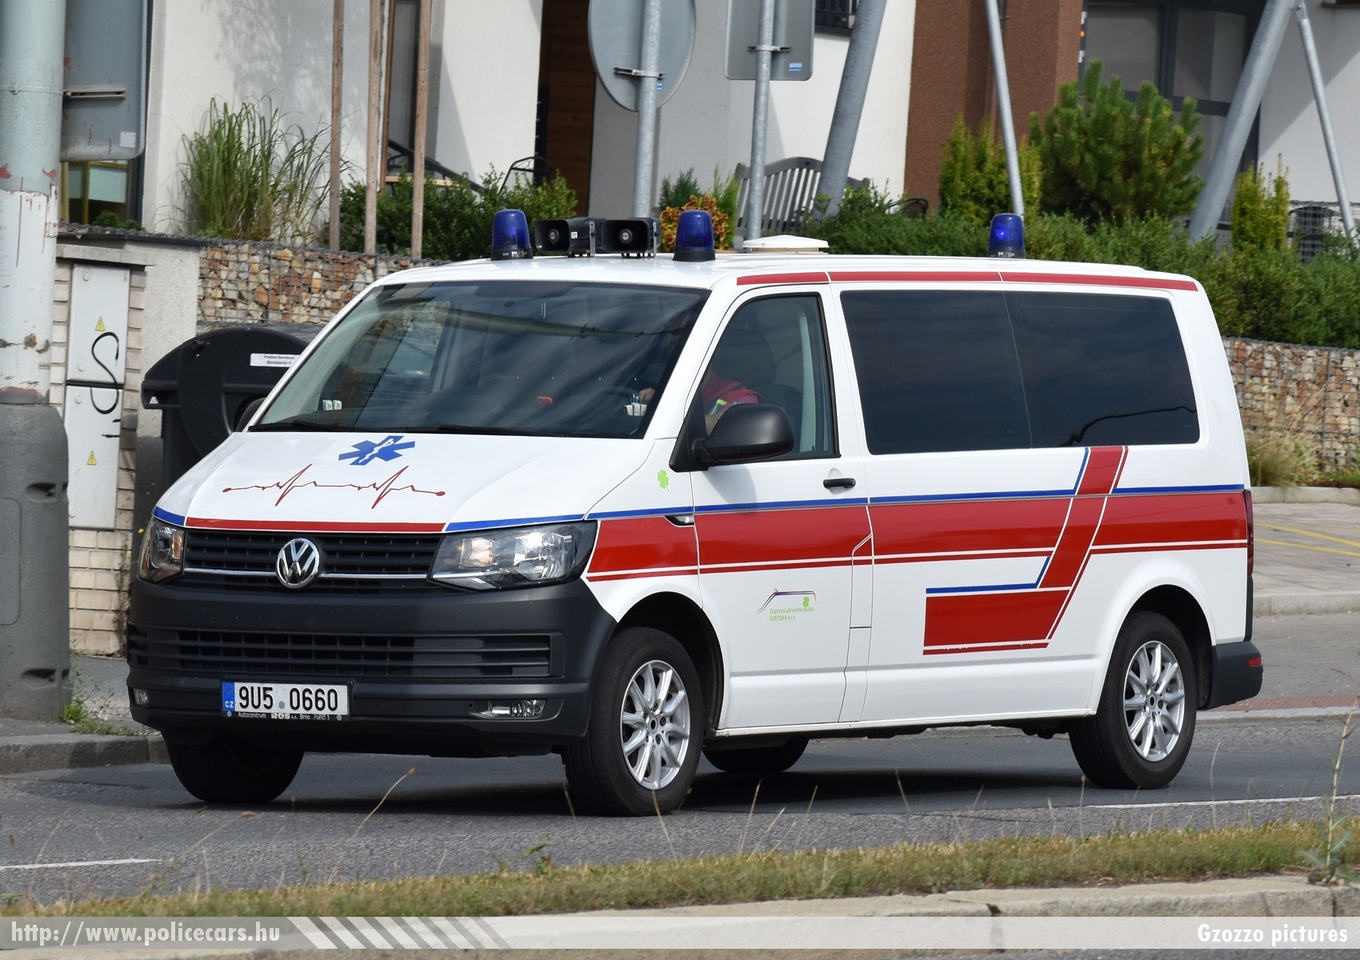 Volkswagen Transporter T6, fotó: Gzozzo pictures
Keywords: cseh Csehország czech ambulance mentő mentőautó